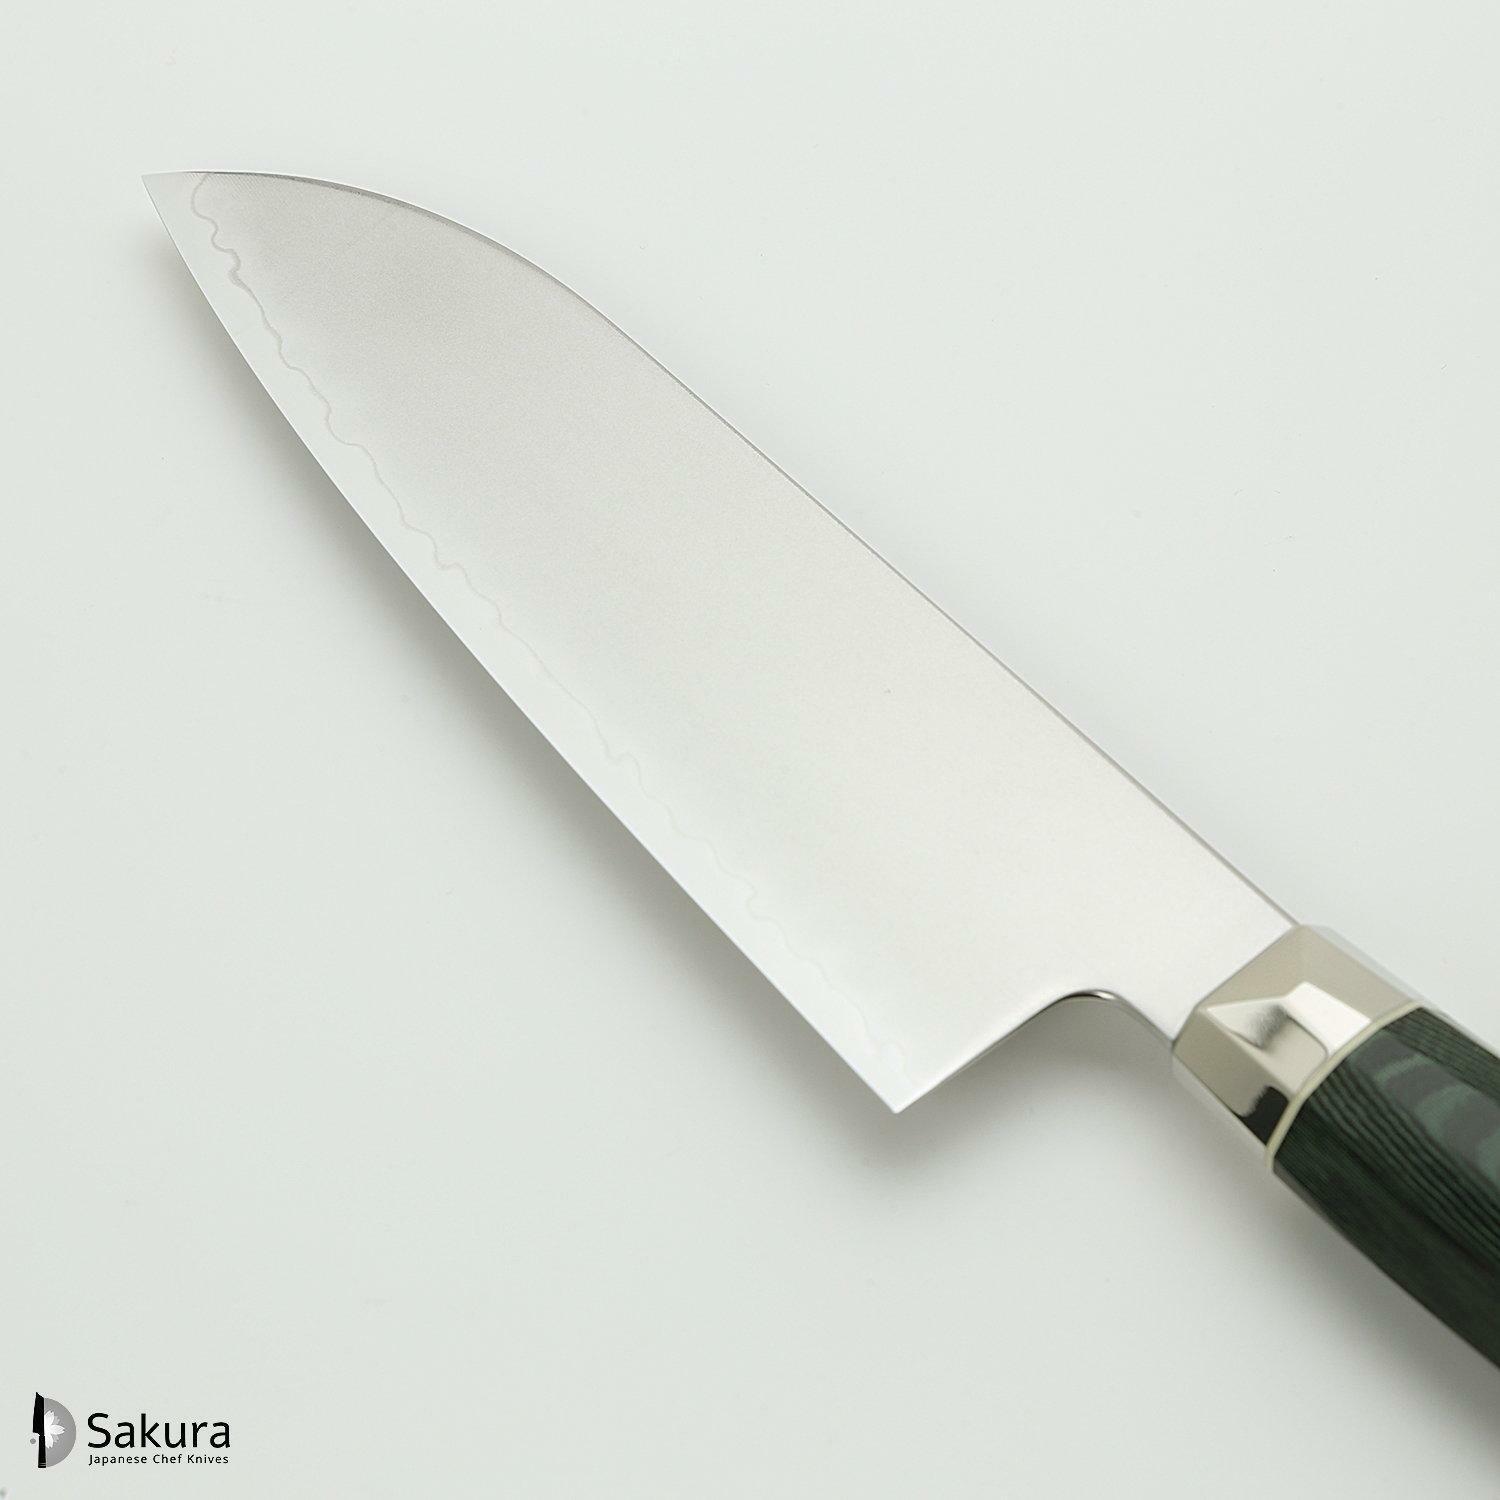 סכין רב-תכליתית סָנטוֹקוּ 150מ״מ מחושלת בעבודת יד 3 שכבות: פלדת פחמן יפנית מתקדמת מסוג R2/SG2 עטופה פלדת אל-חלד גימור מט מלוטש מקוסטה זאנמאיי יפן ZRG-1215G